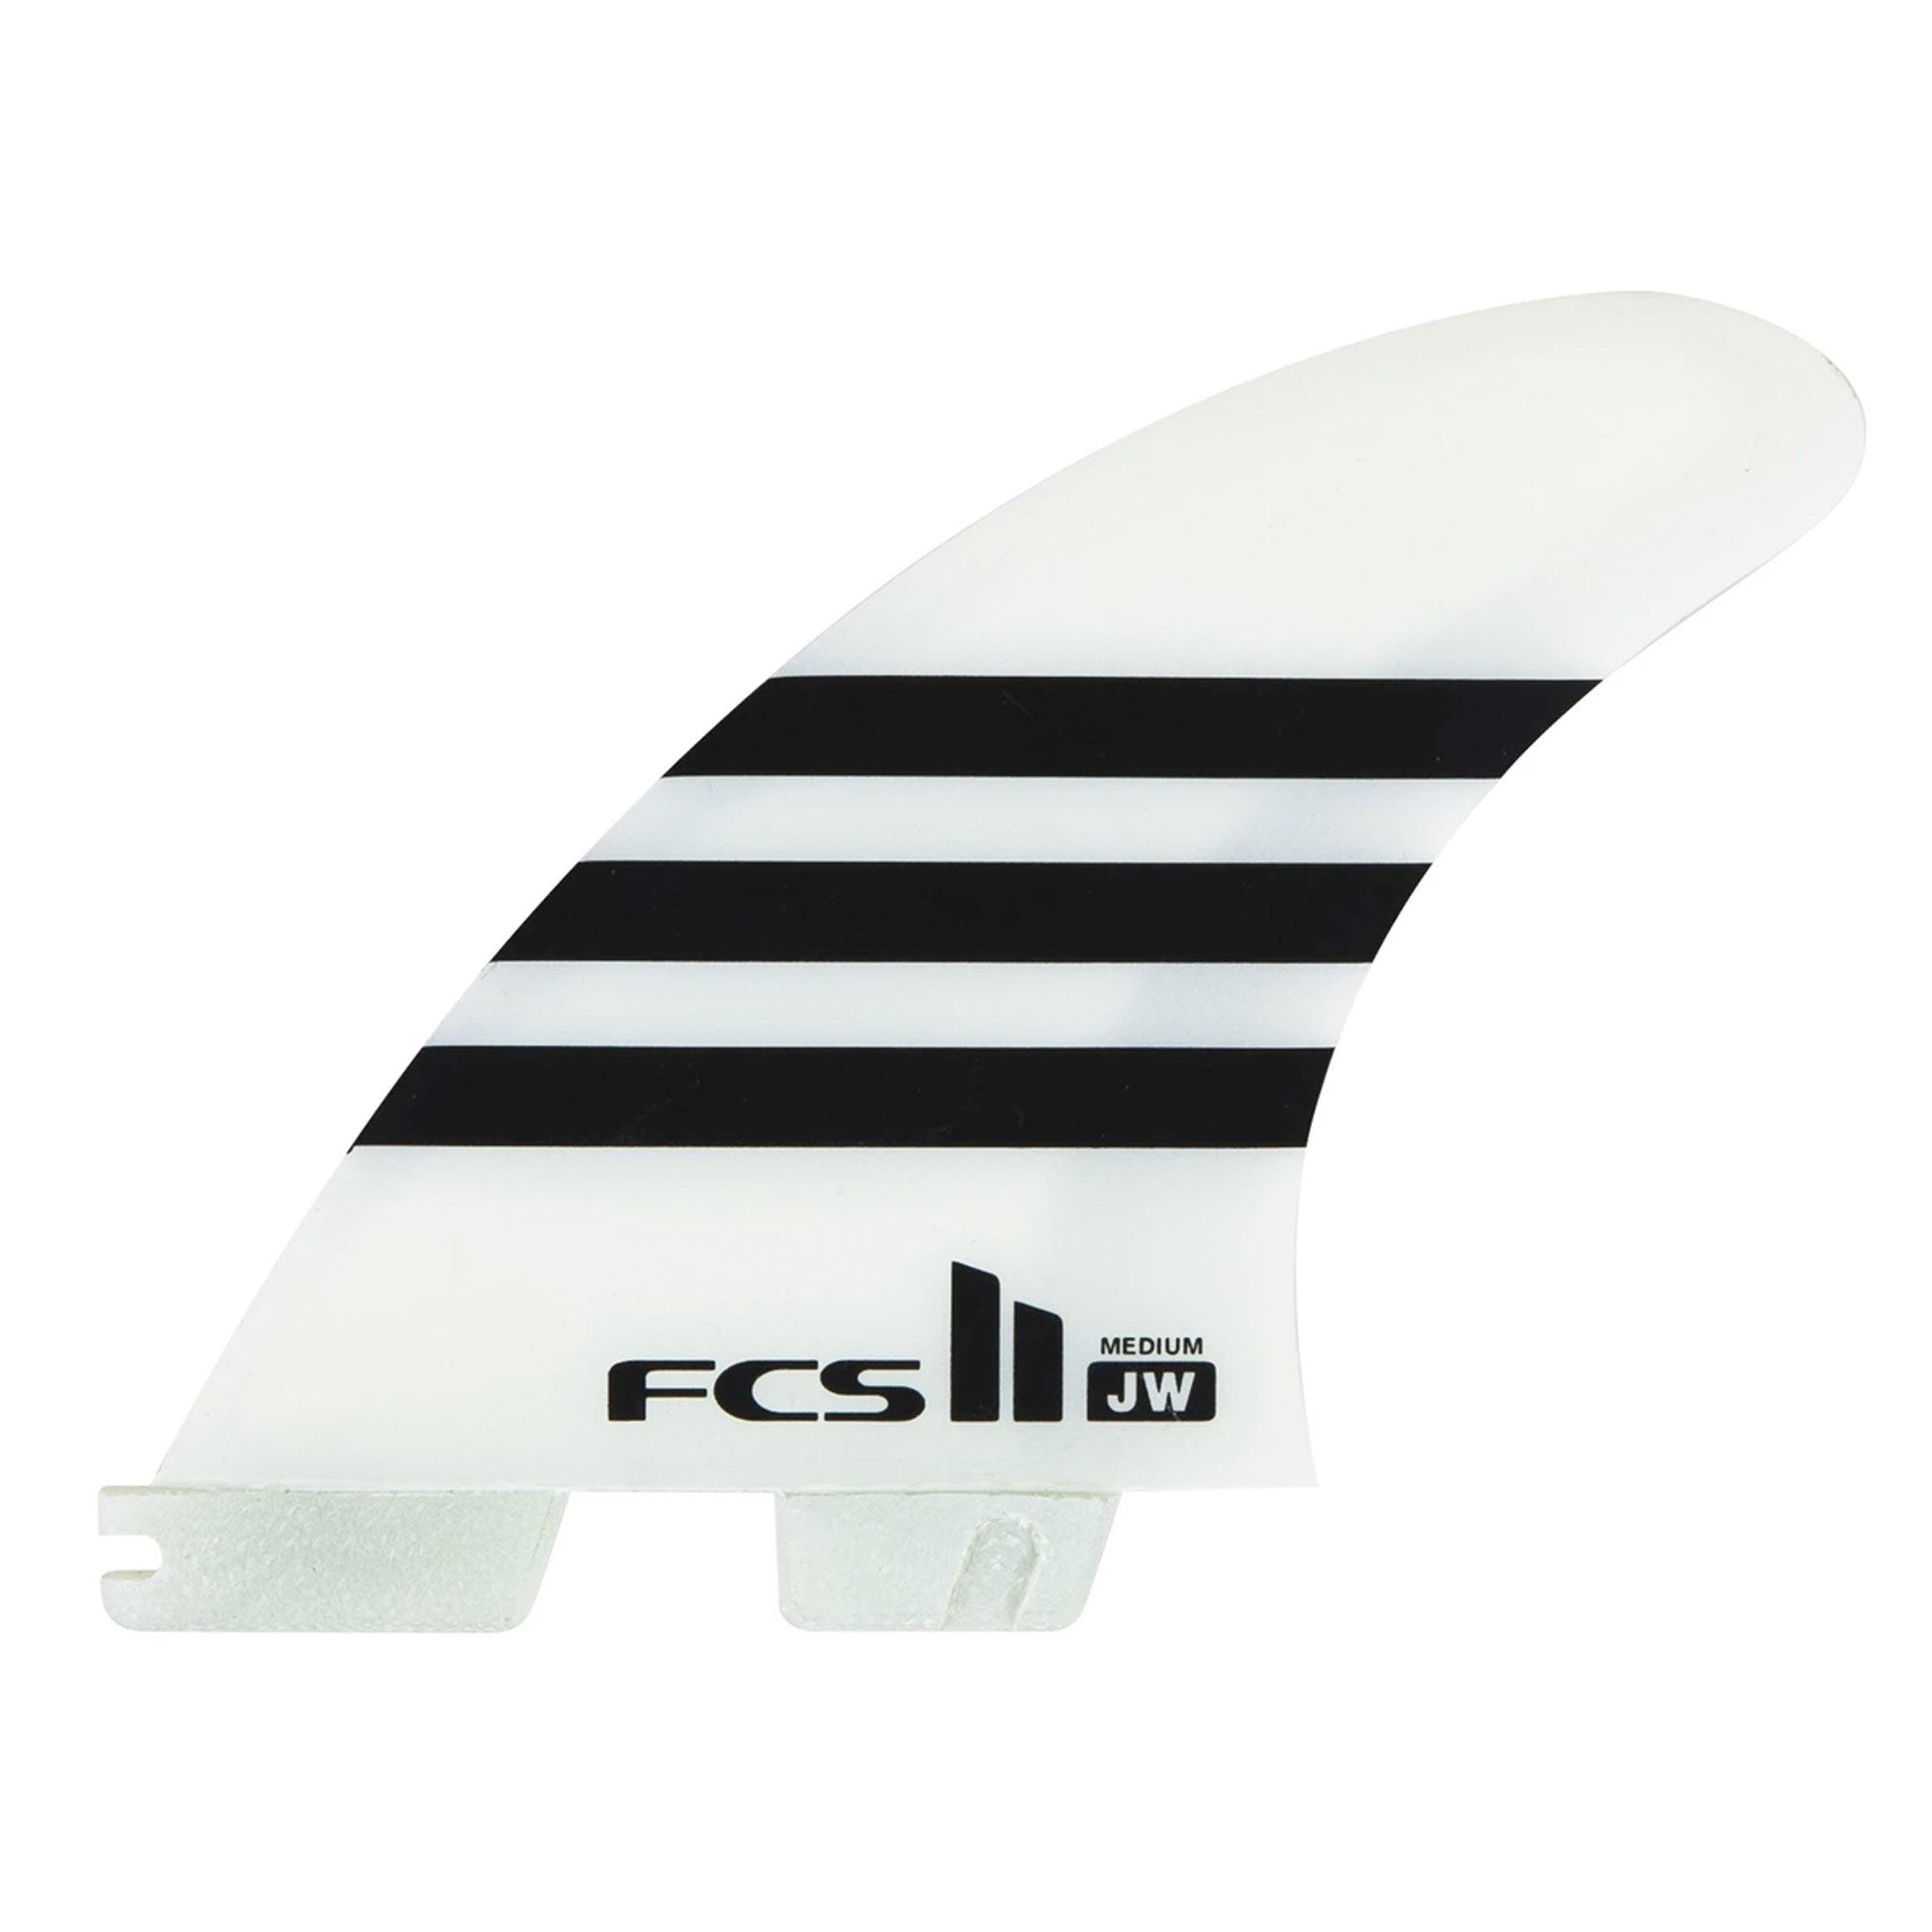 FCS II Julian Wilson Large PC Tri Surfboard Fins